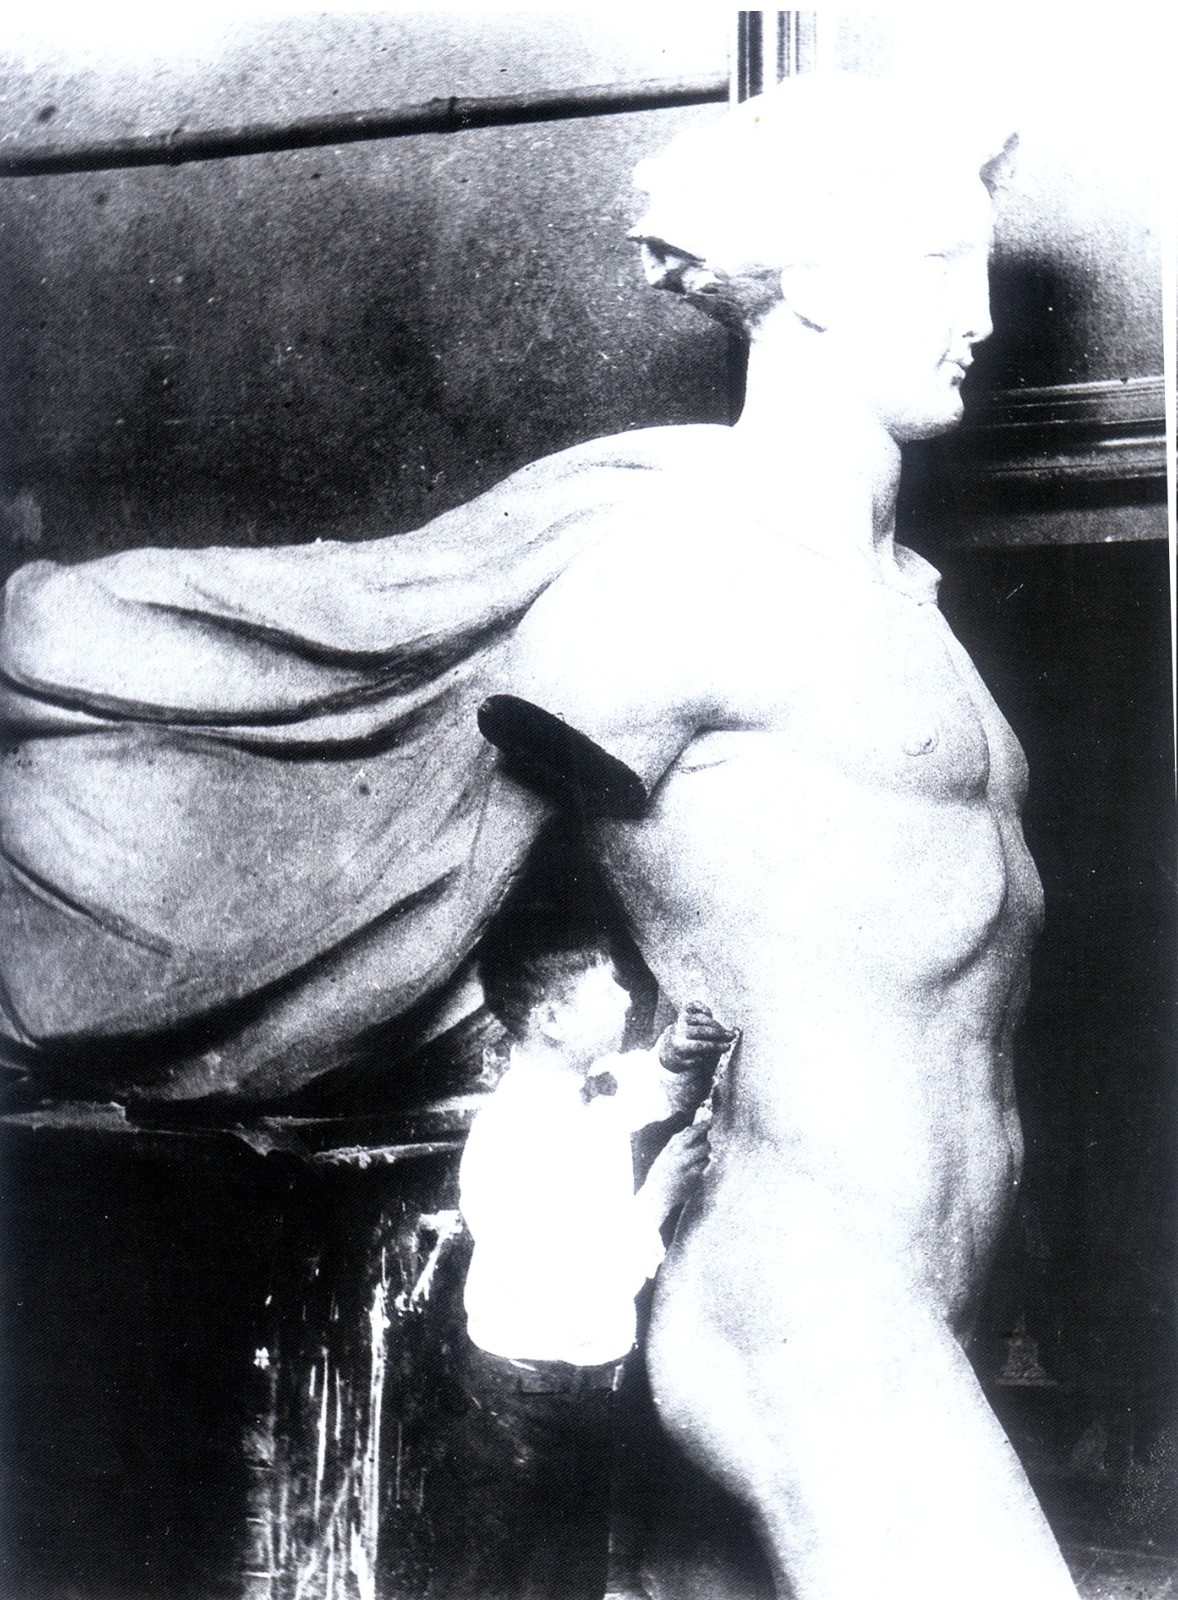 006、张充仁参与塑制百年宫巨型人物雕塑(1934年).jpg